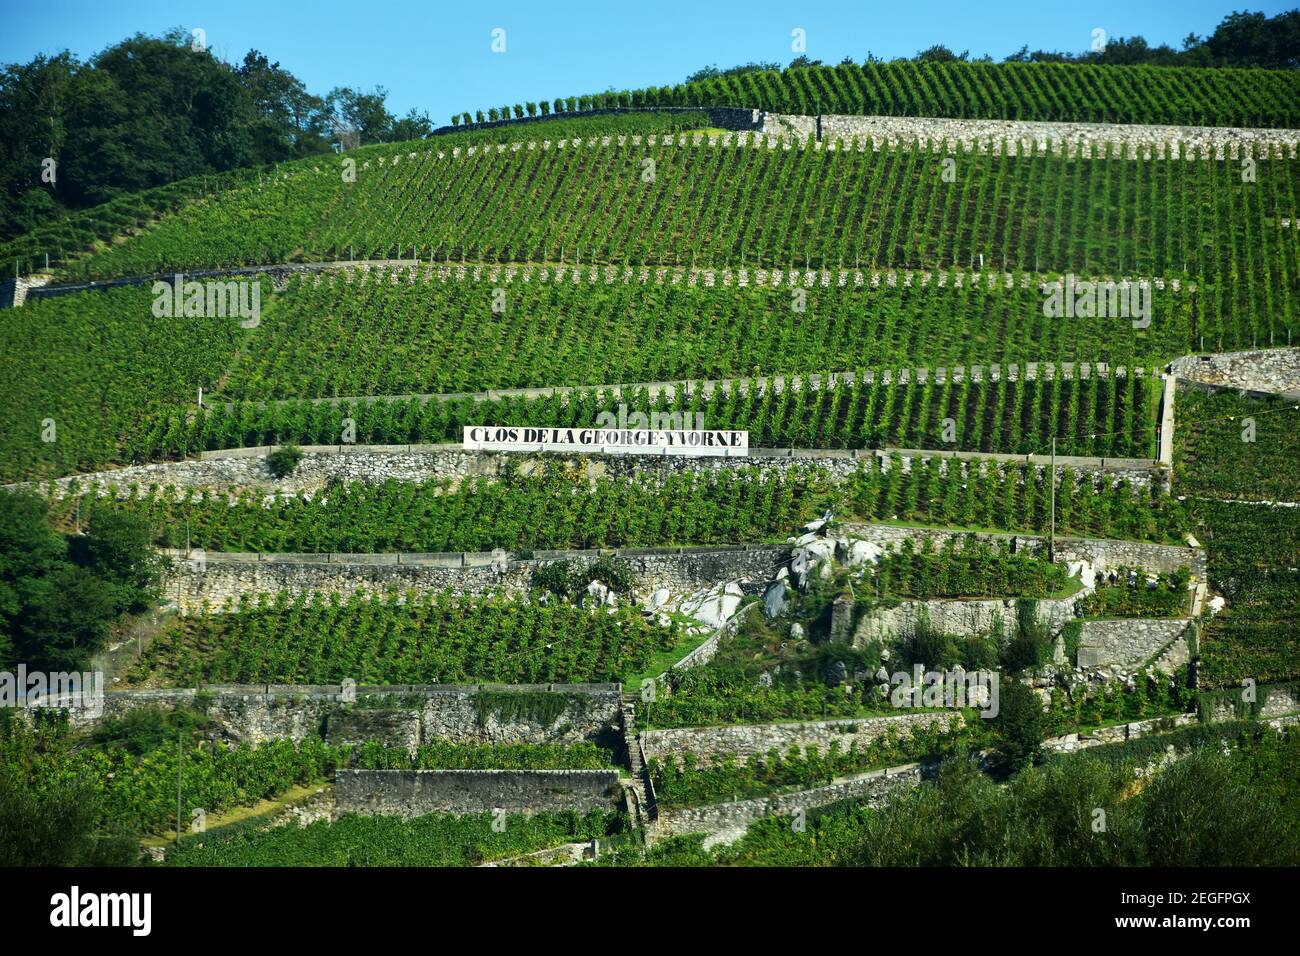 Chablais, Suisse- 24 août 2019. Clos de la George Yvorne, vignoble en terrasse à Chablais, canton de Vaud, montagnes des Alpes, Suisse Banque D'Images